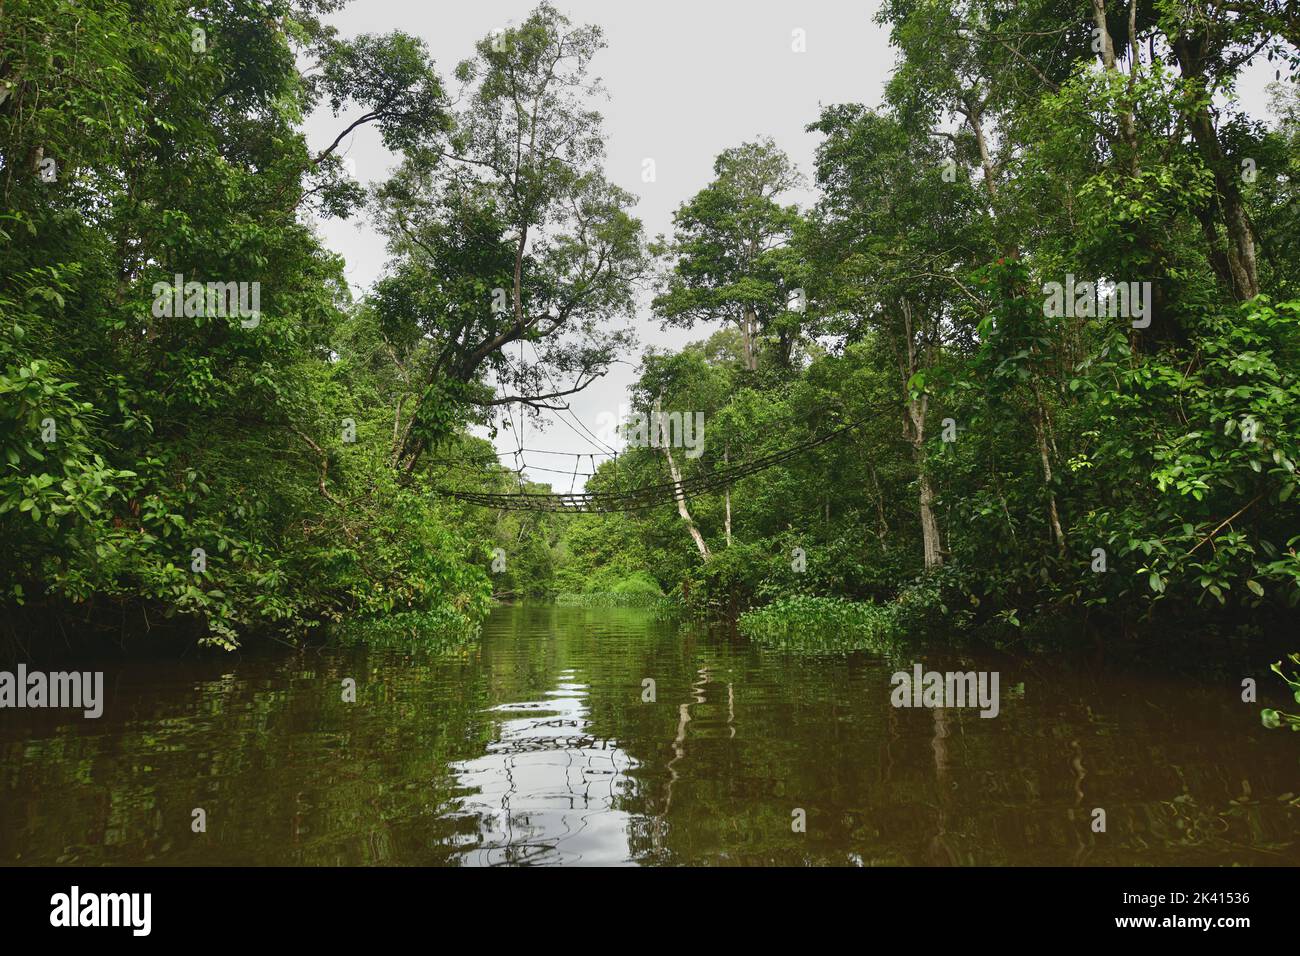 Puente colgante sobre el río Menungal para proteger a los orangutanes y ayudarles a cruzar el río Kinabatangan, Borneo, Malasia Foto de stock